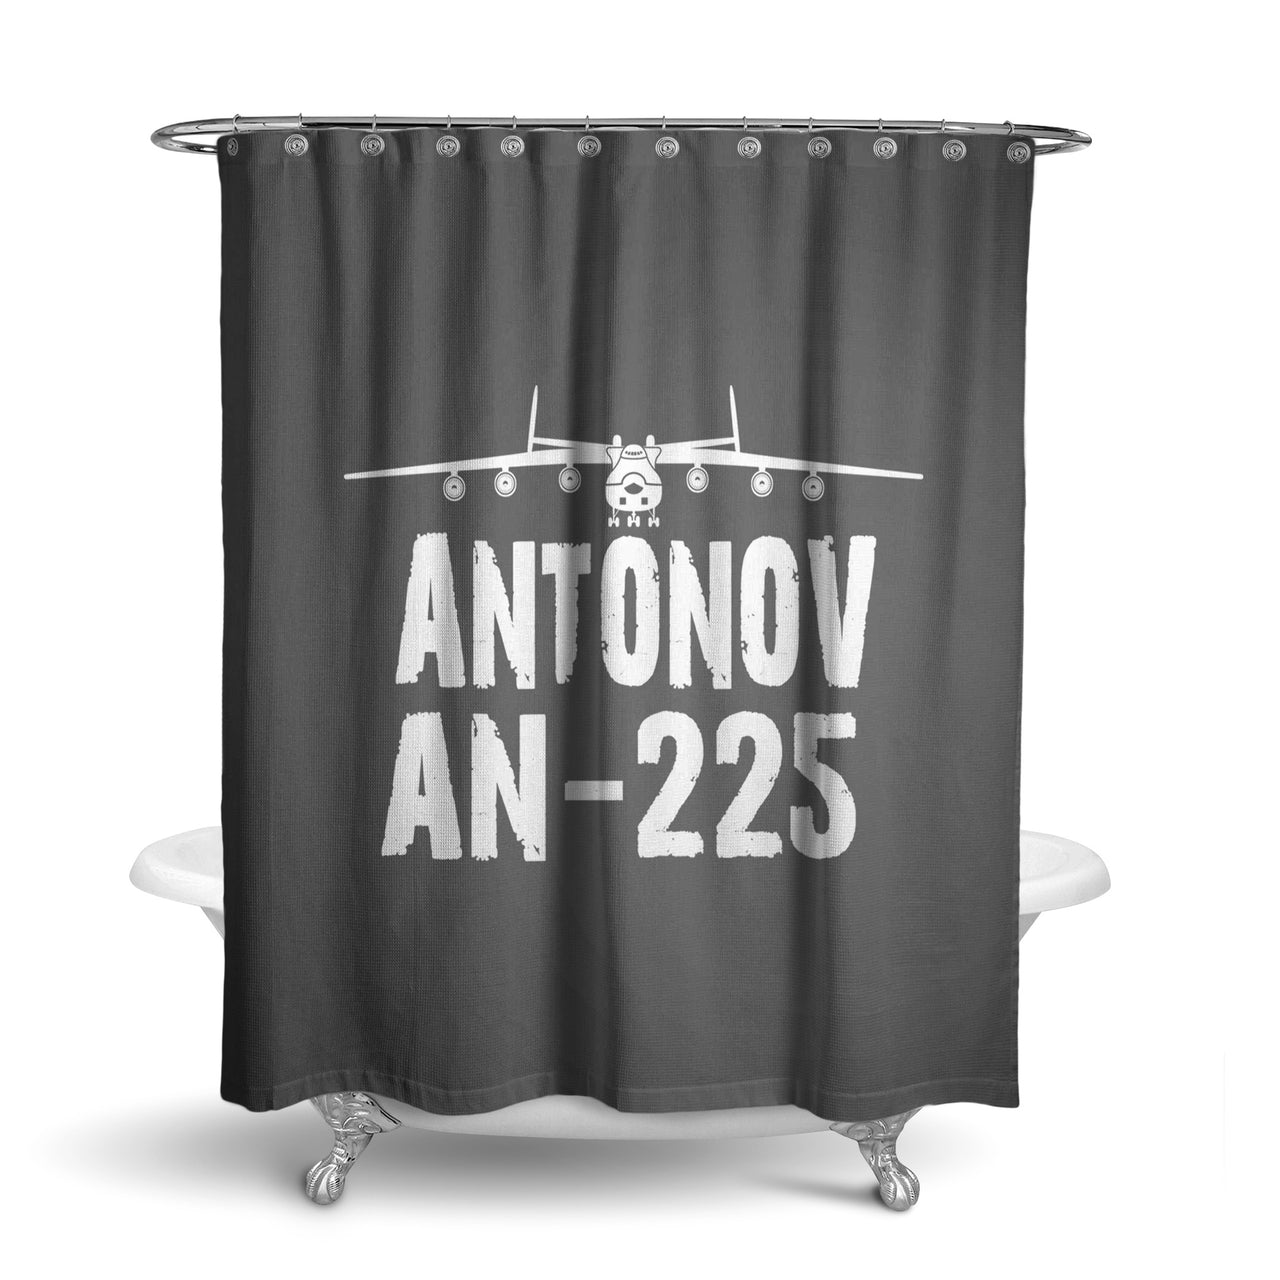 Antonov AN-225 & Plane Designed Shower Curtains